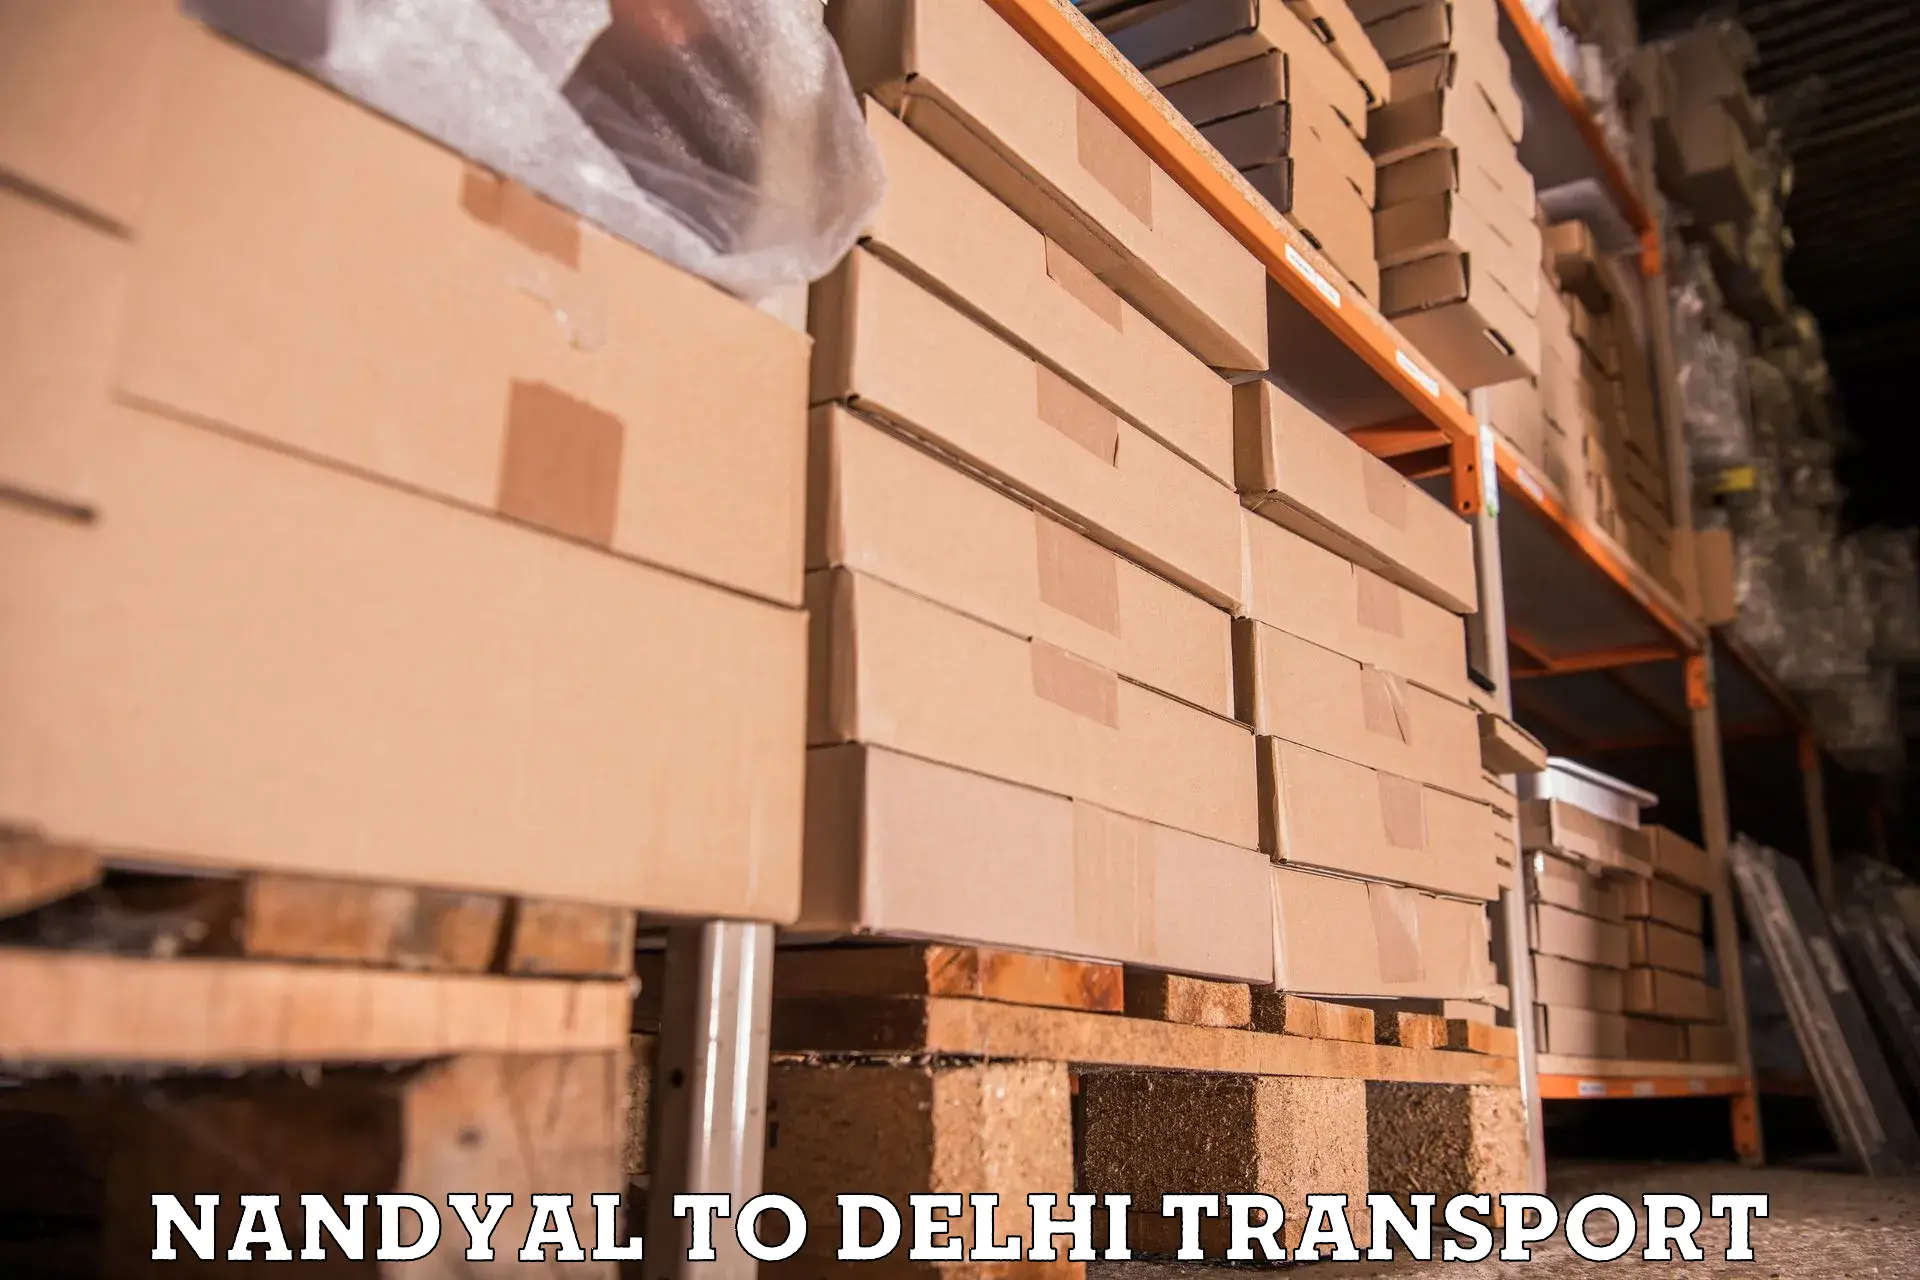 Daily transport service Nandyal to Guru Gobind Singh Indraprastha University New Delhi